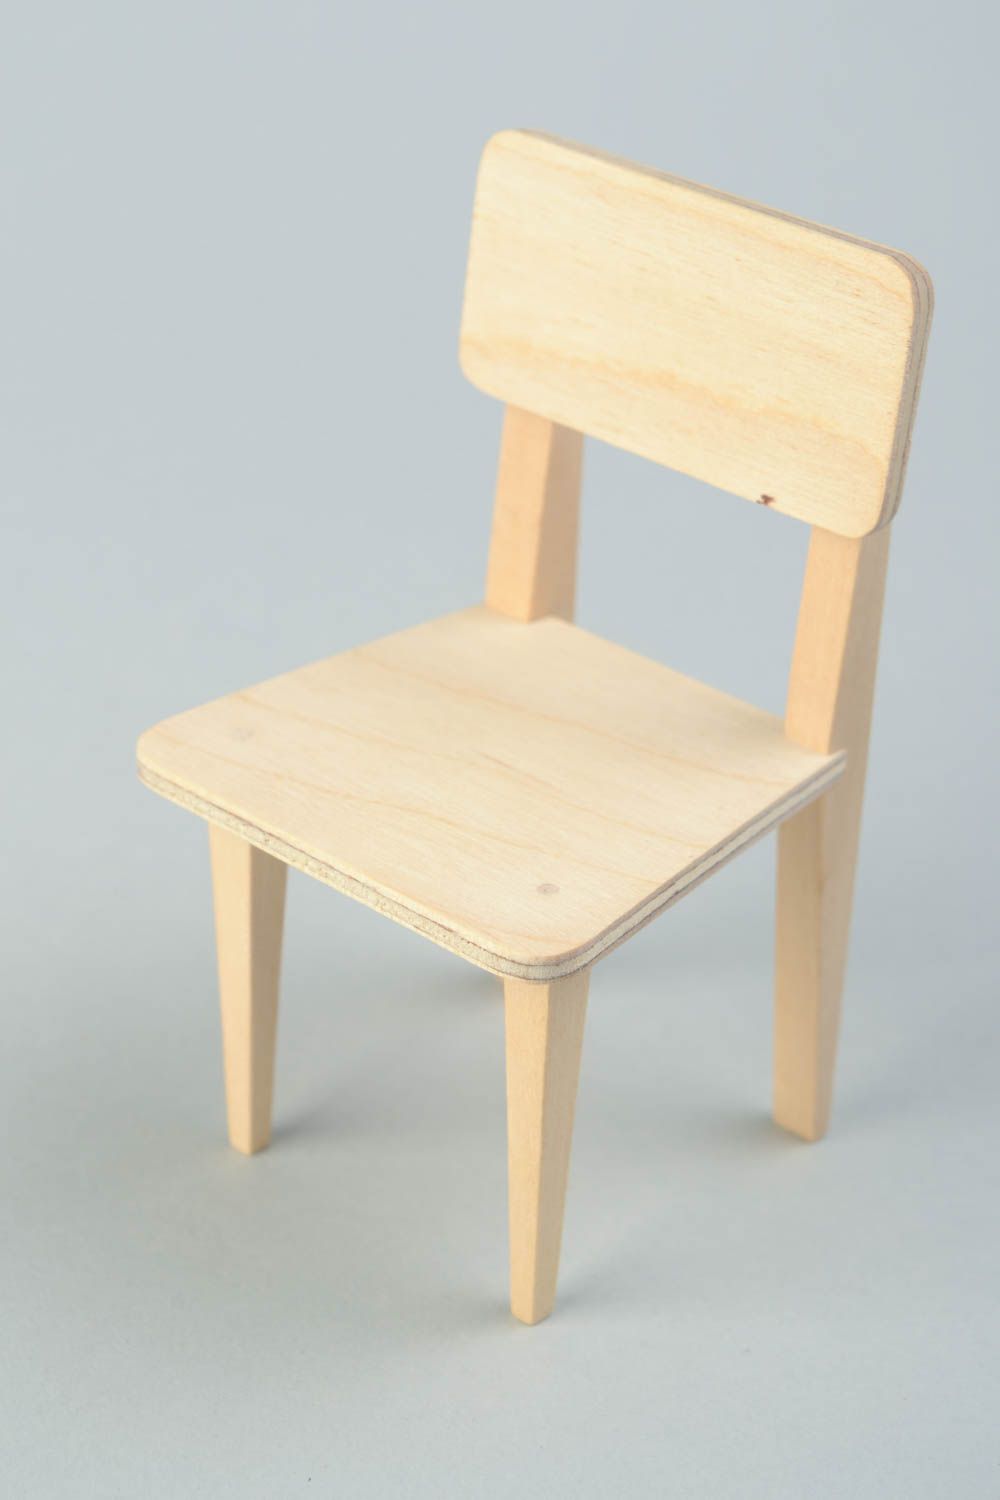 Hölzerner Rohling Stuhl zum Bemalen oder für Decoupage für Puppen Handarbeit foto 1